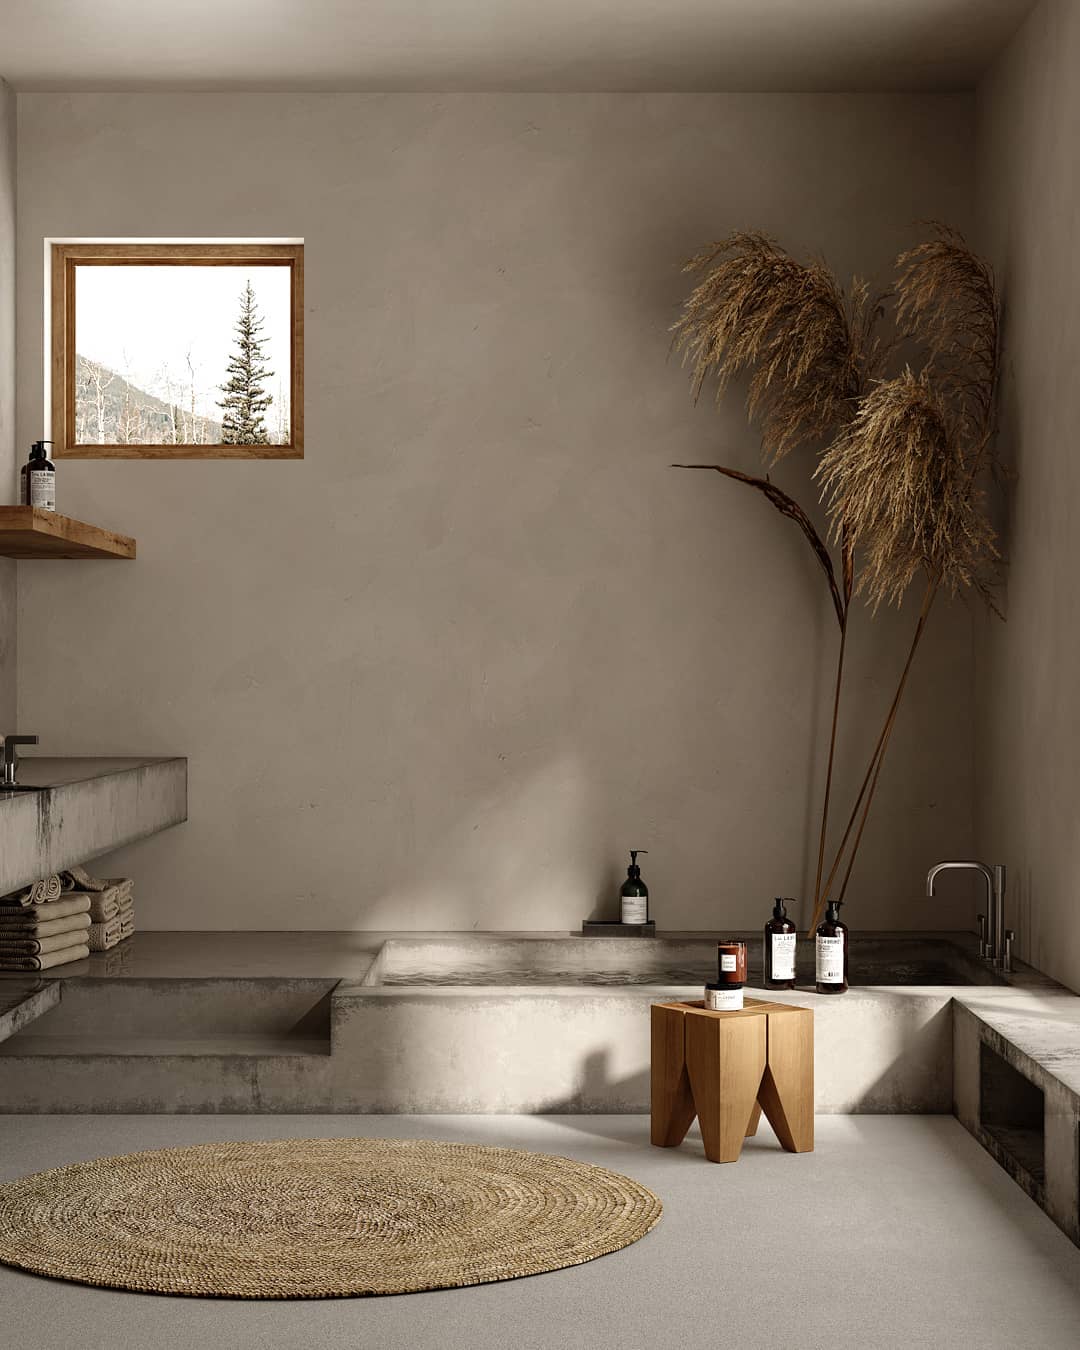 Une salle de bain slow design avec baignoire en pierre, tapis rond, herbes de la pampa et couleurs douces et neutres